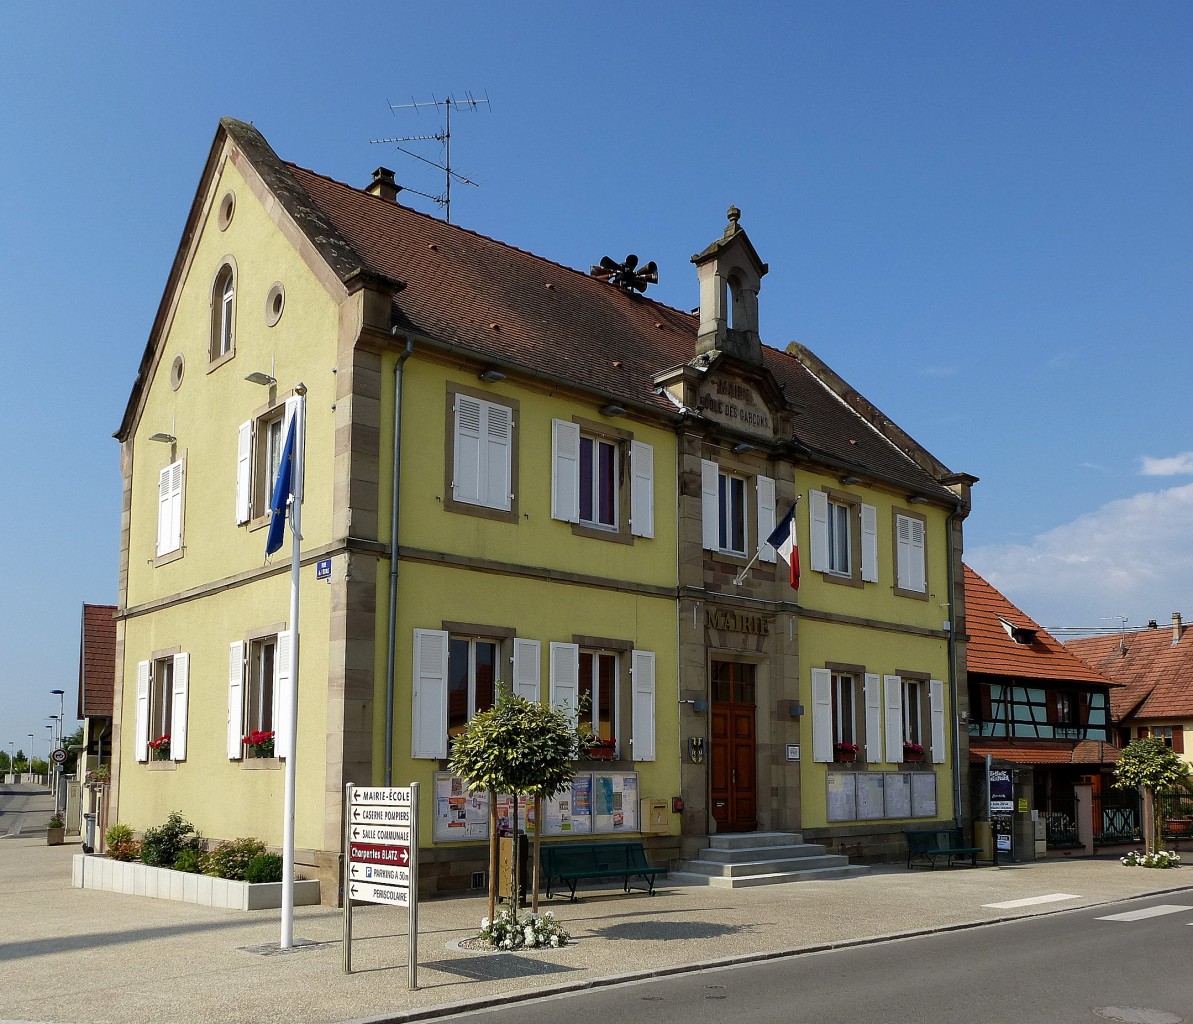 Heidolsheim im Elsa, das Rathaus der Gemeinde, Juni 2014